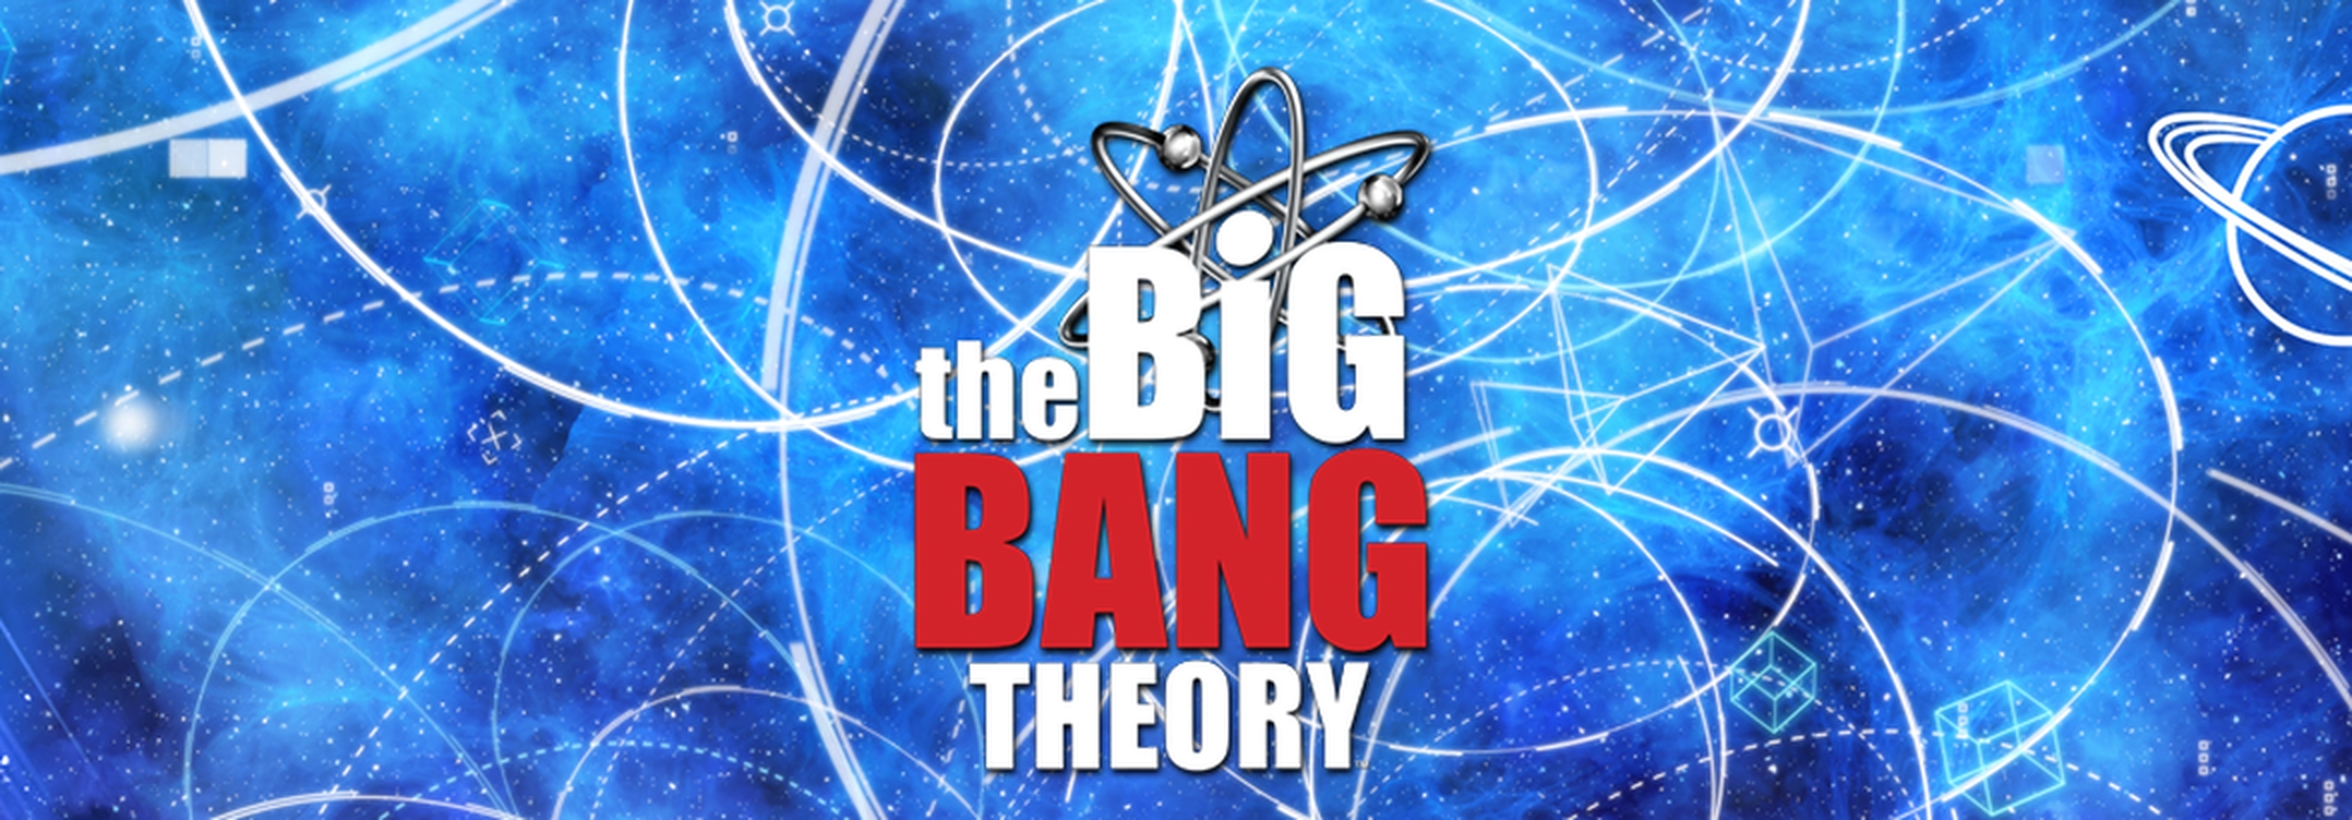 The Big Bang Theory demo